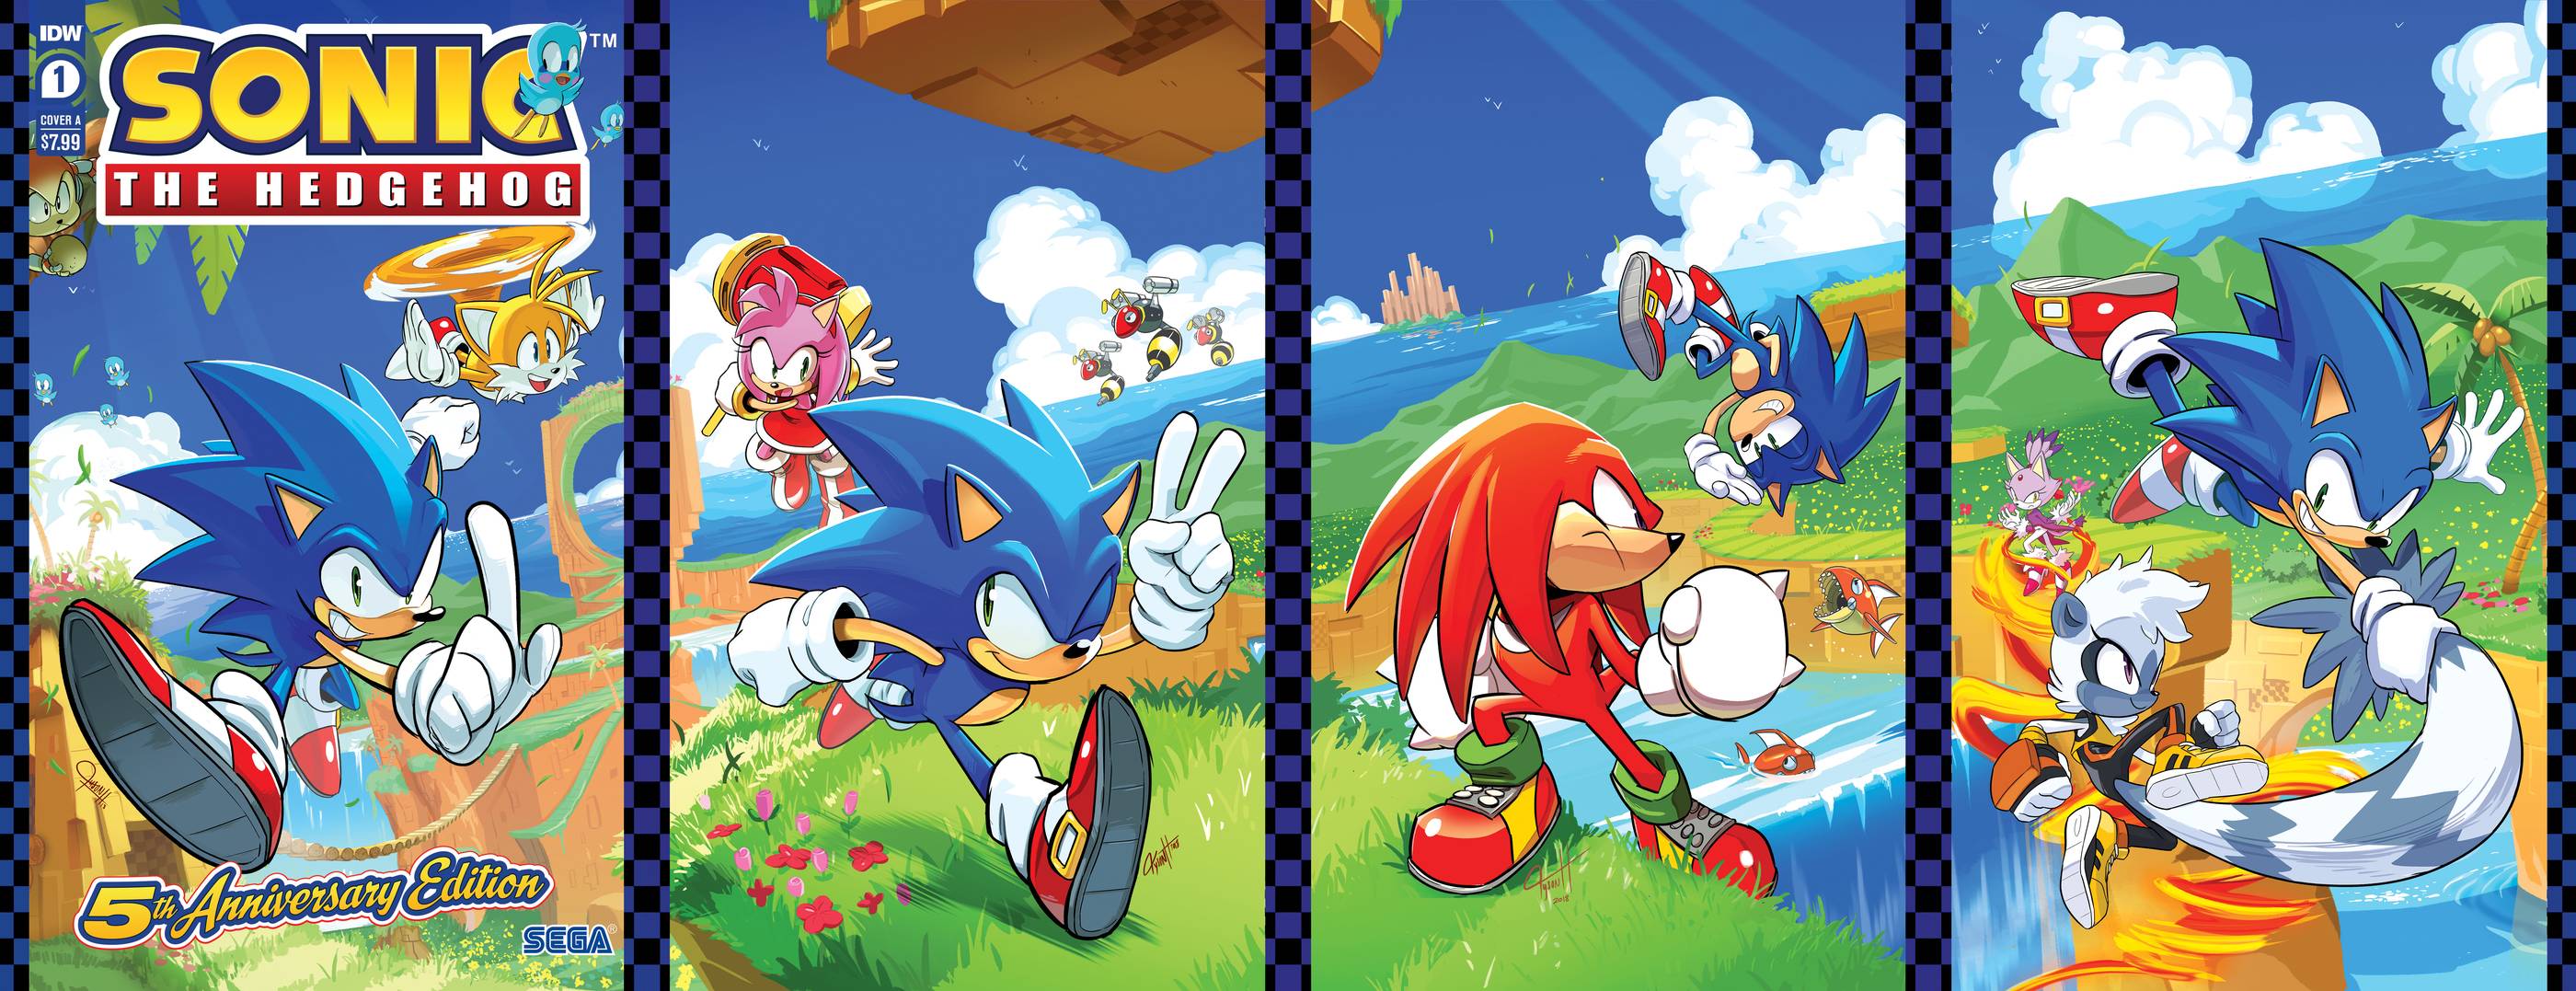 Sonic The Hedgehog (1991)  Sonic, Sonic the hedgehog, Hedgehog